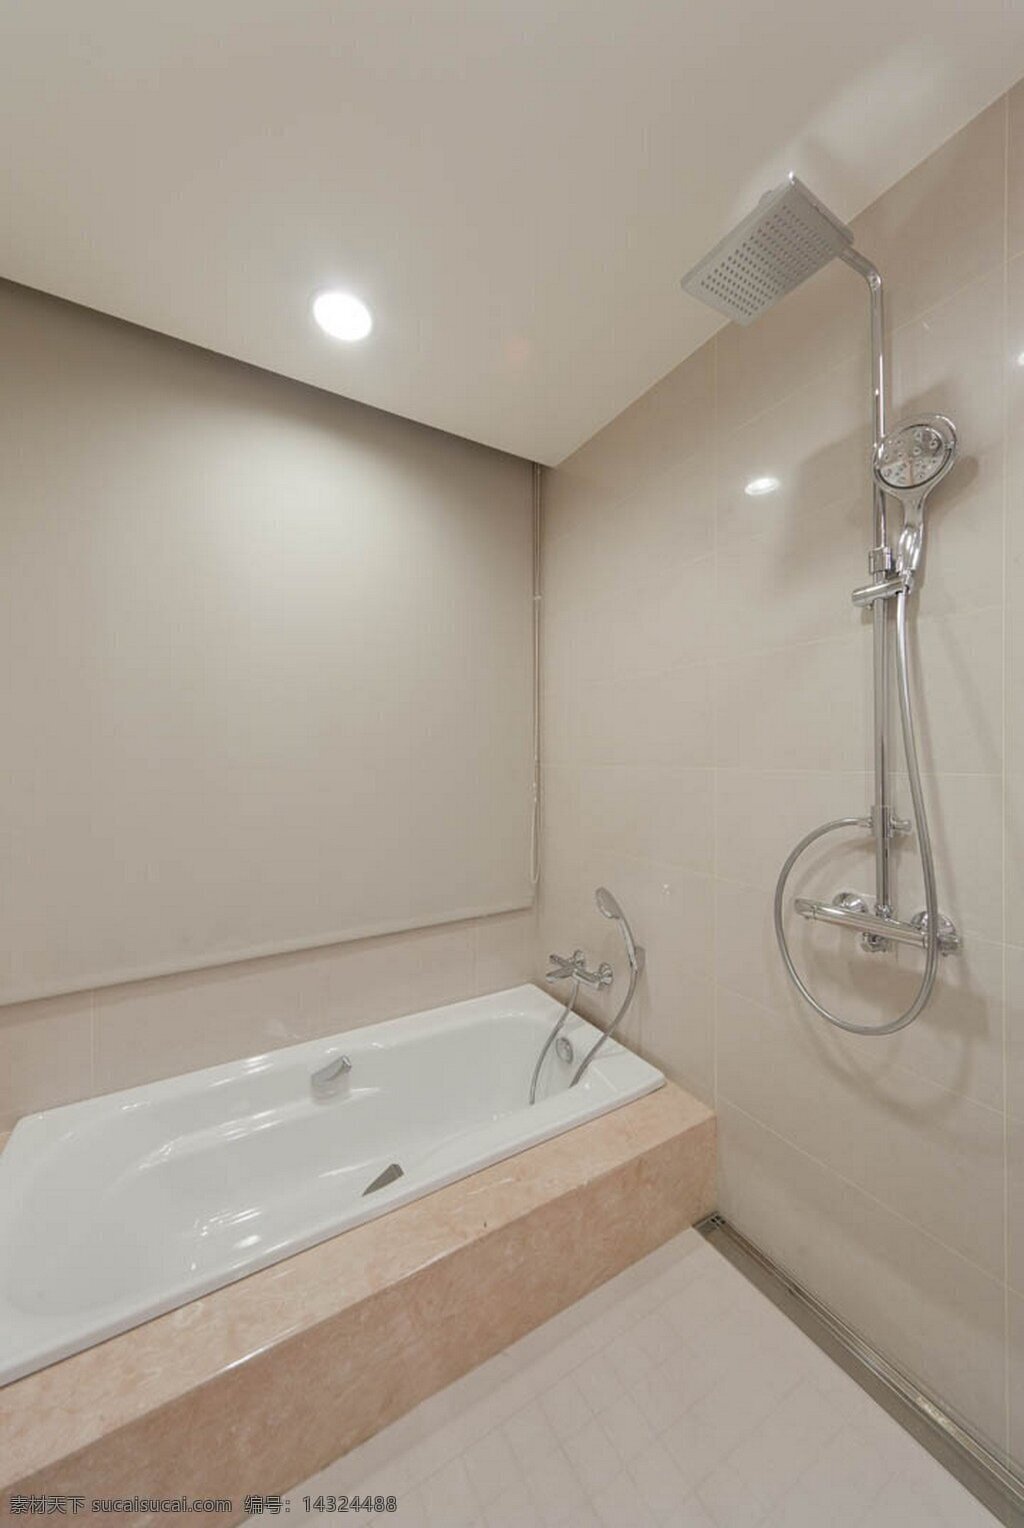 现代 浴室 杏色 浴缸 室内装修 效果图 浴室装修 白色地板 瓷砖背景墙 瓷砖地板